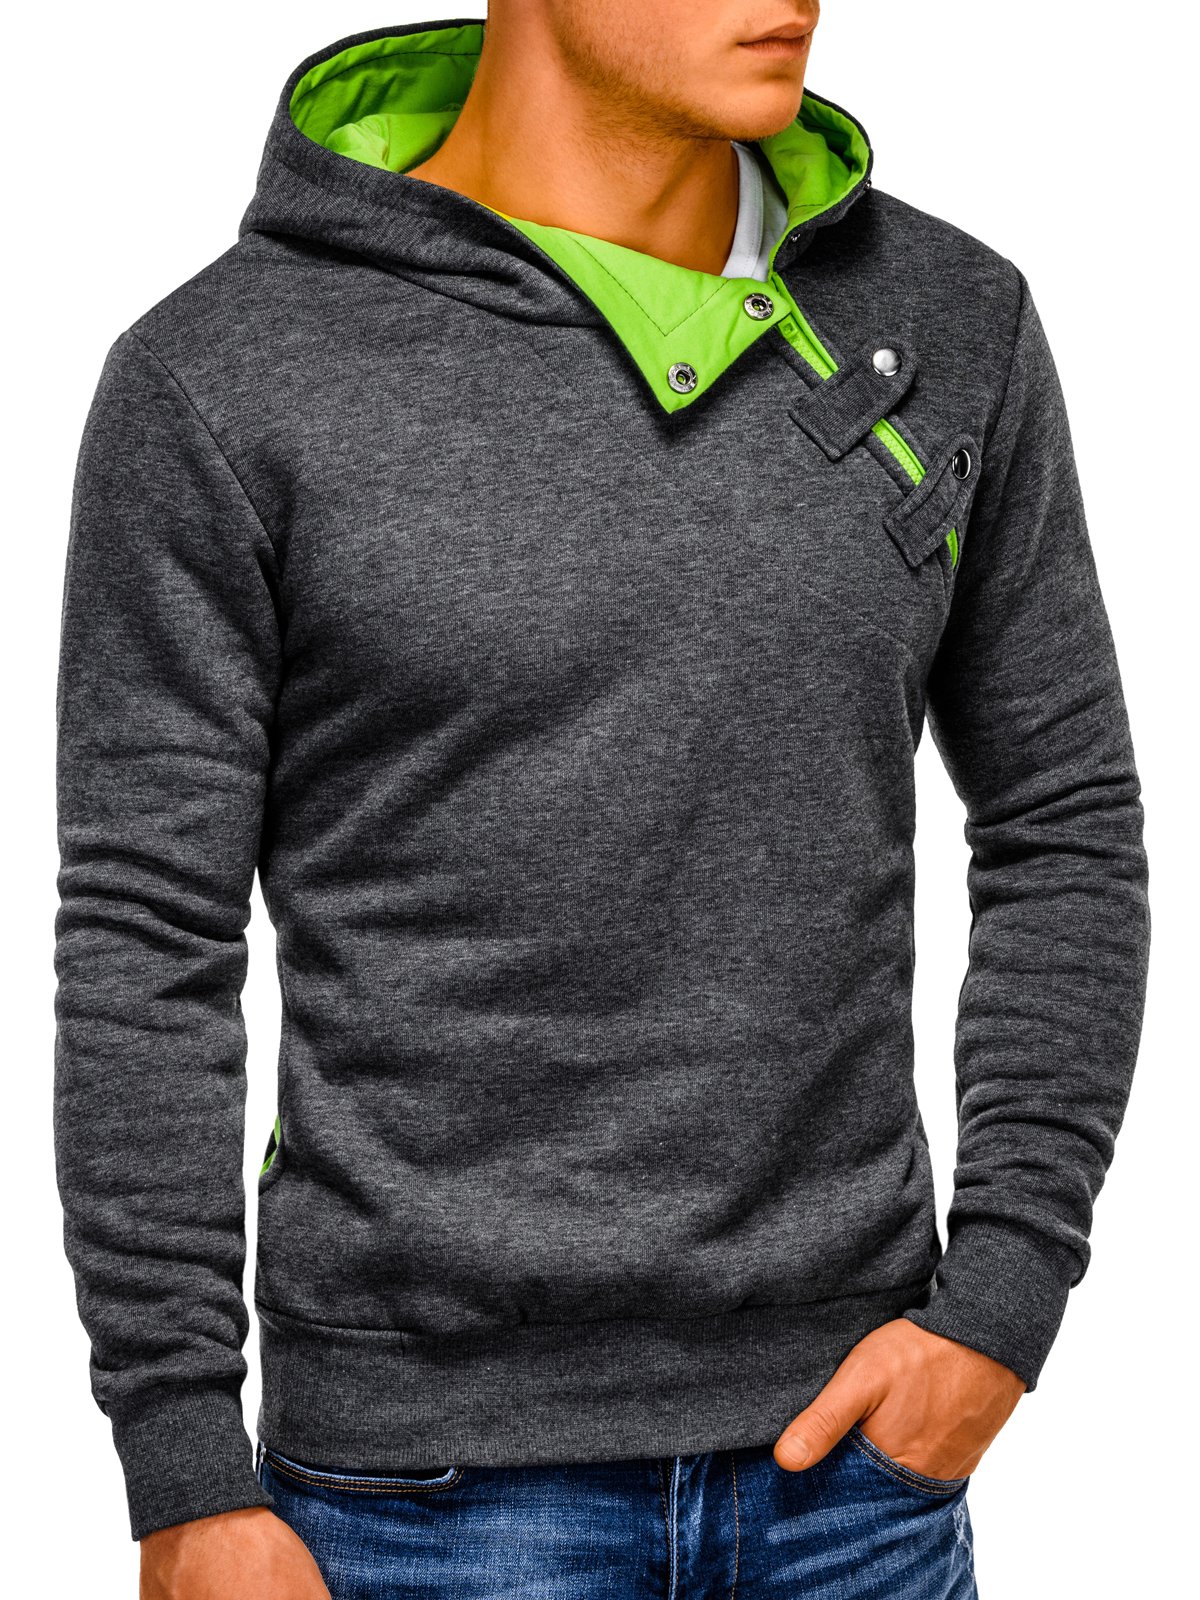 Men's hoodie PACO - dark grey/green | MODONE wholesale - Clothing For Men